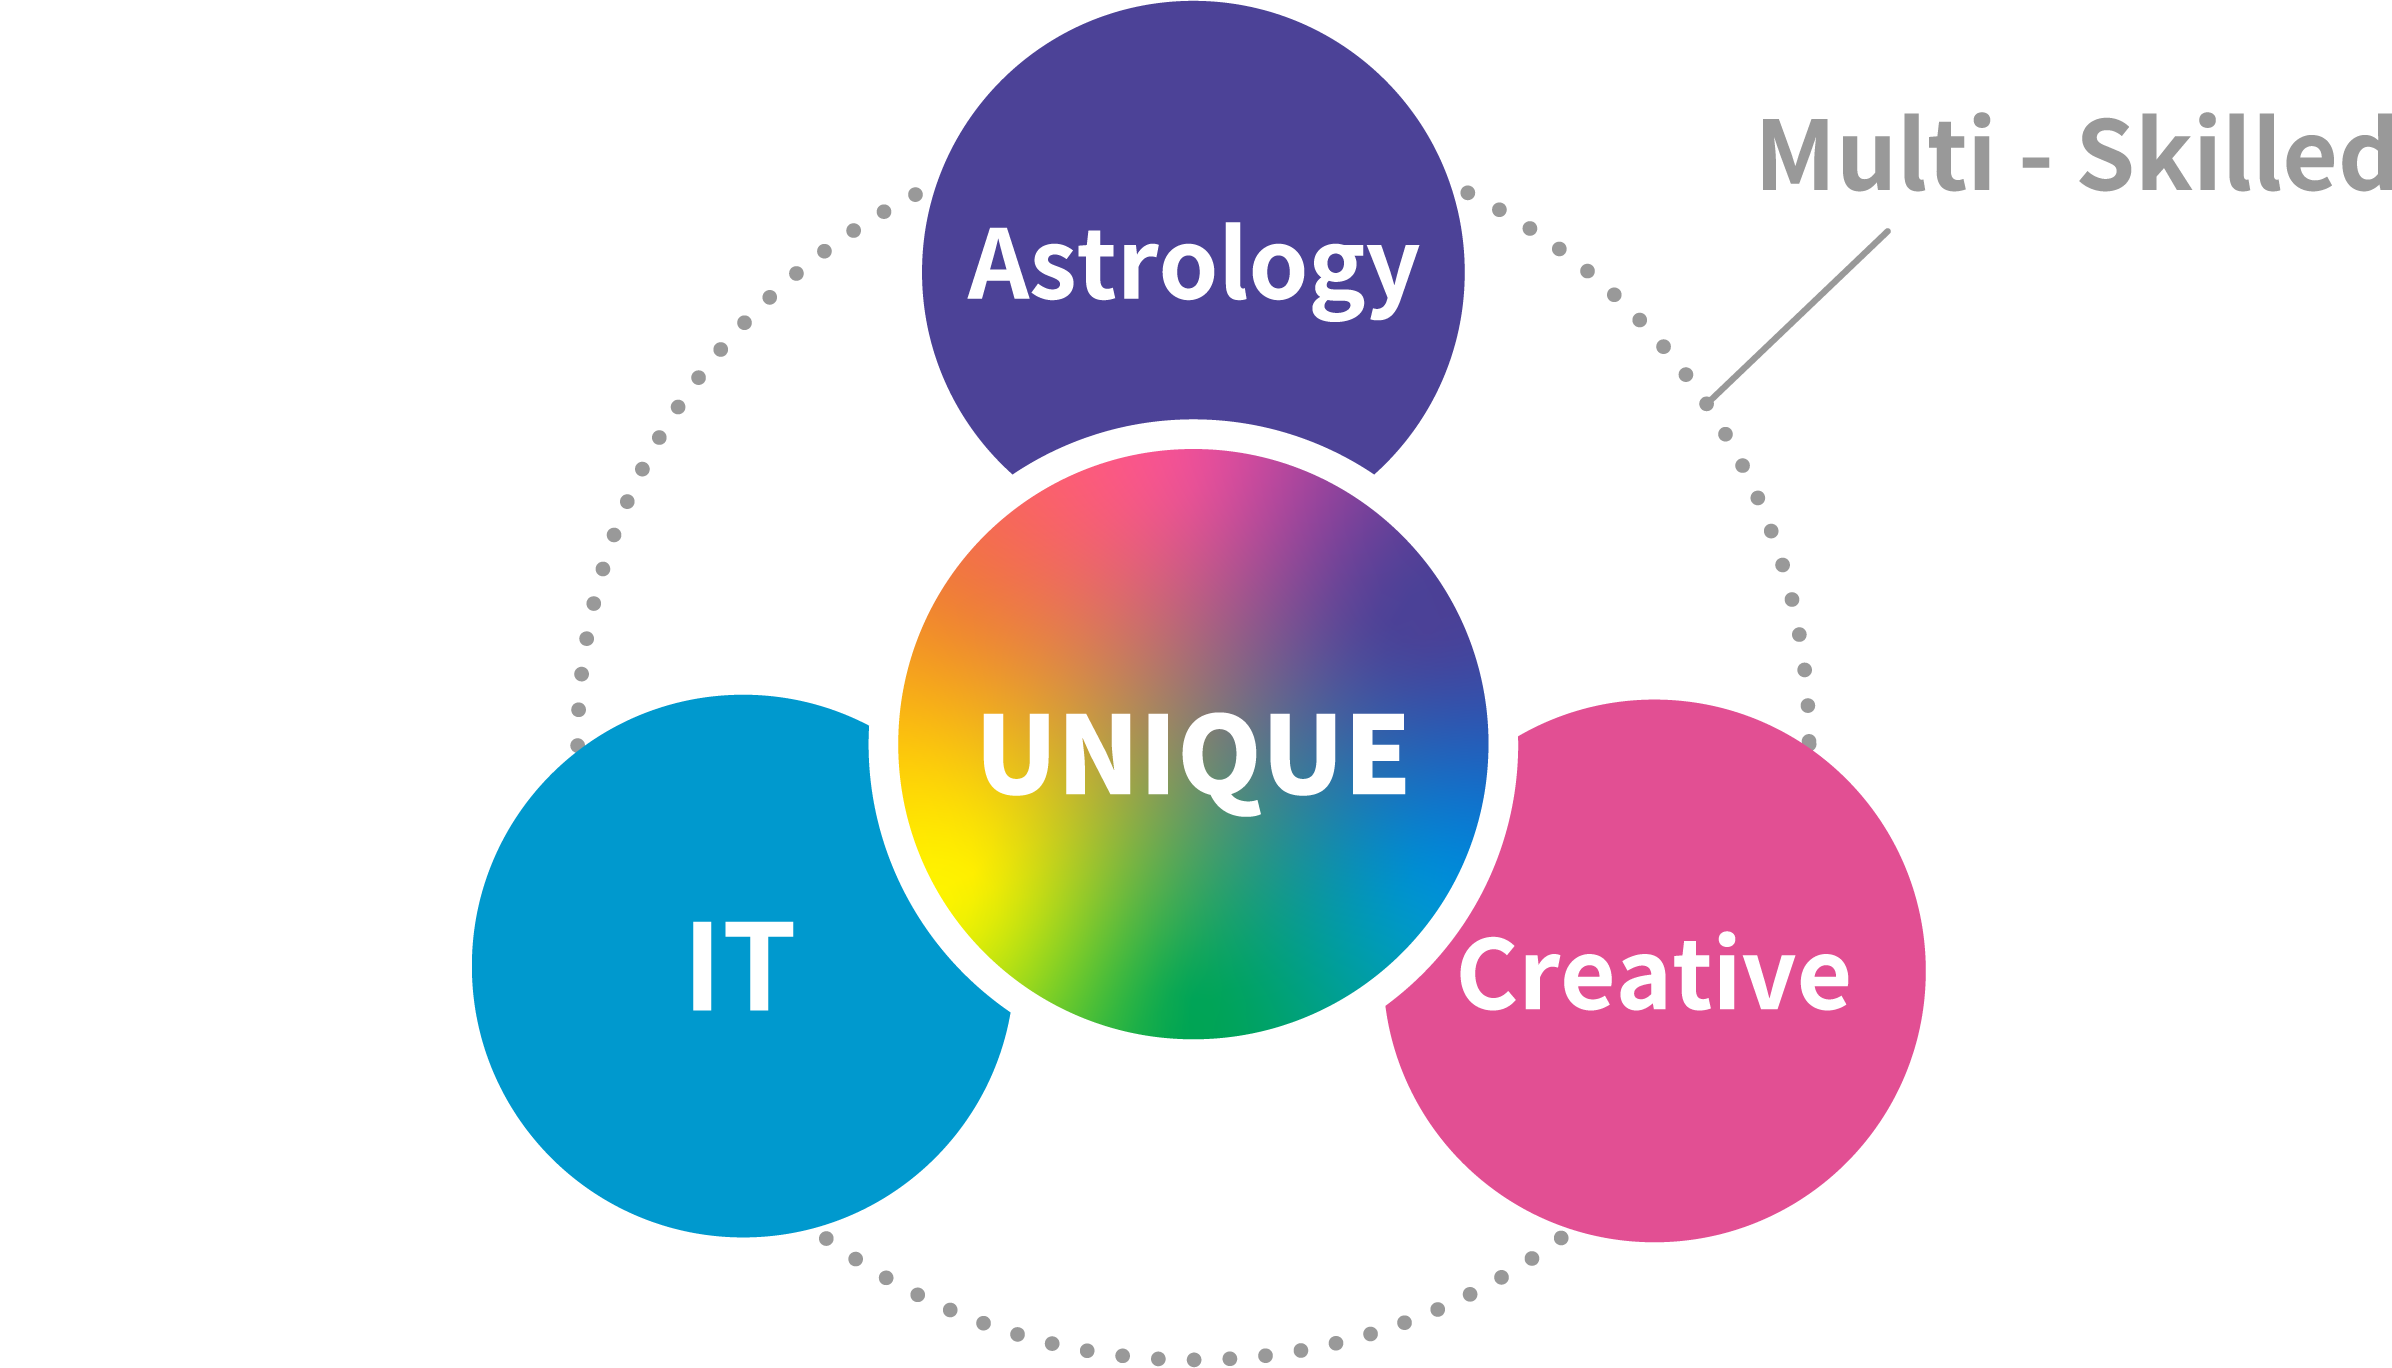 概念図：占星術、クリエイティブ、ITの3つが仕事の柱であることを示している。また、3つの仕事を取り巻くマルチスキルが加わって、ユニークな人材であることを表現している